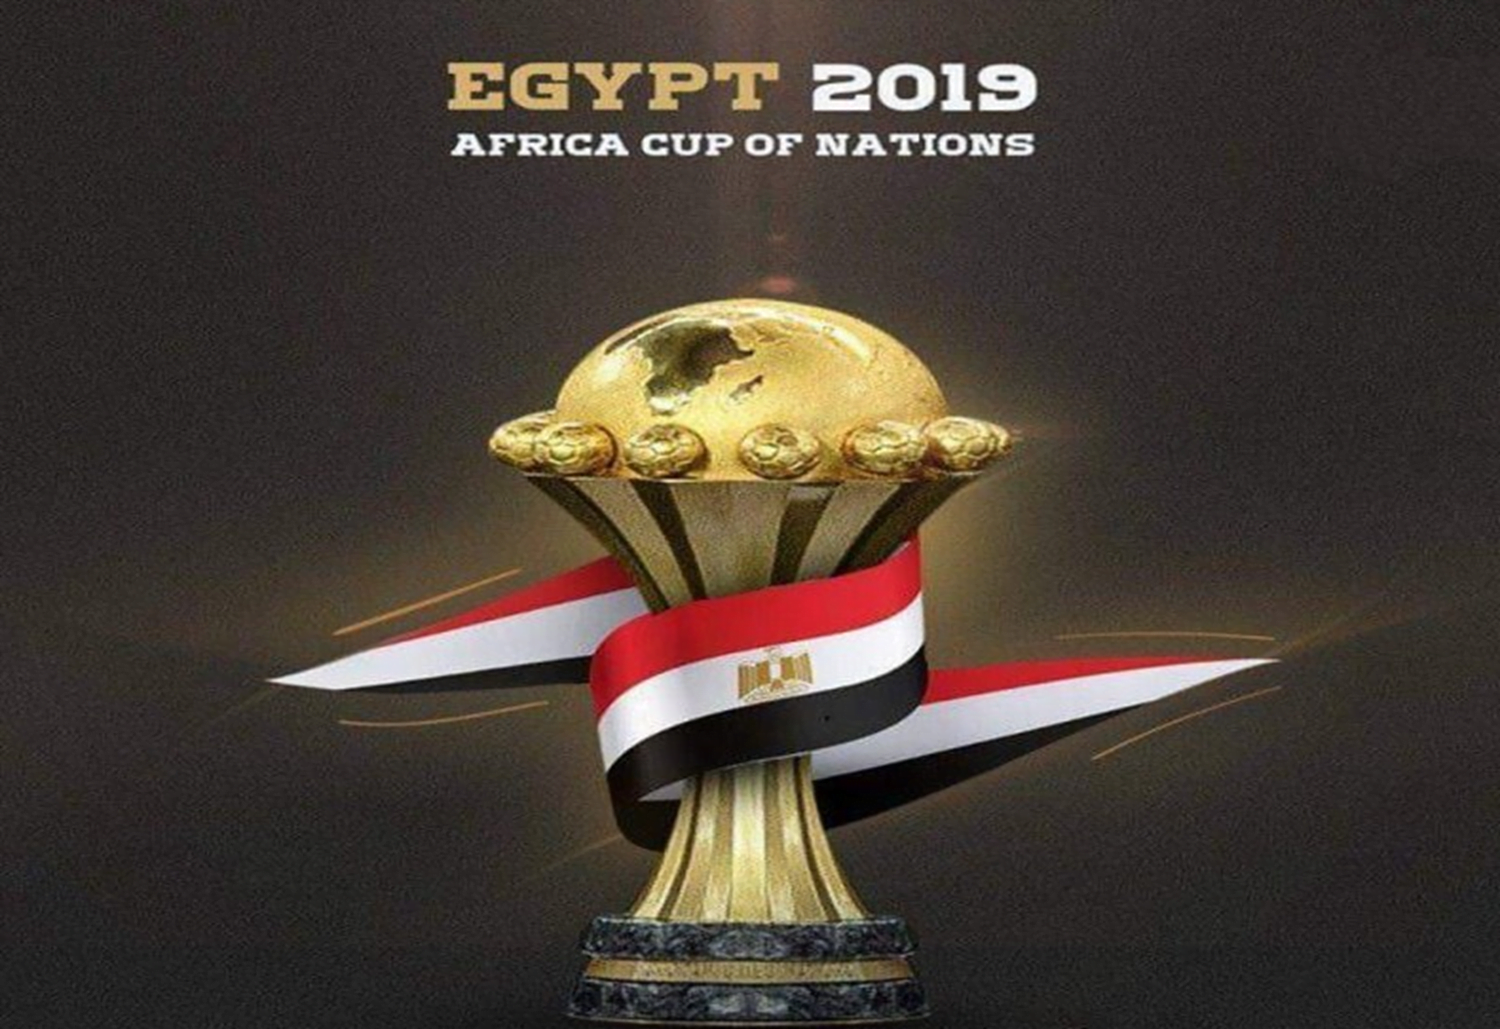 تردد القنوات الناقلة لبطولة كأس الأمم الأفريقية 2019 ترددات بي إن سبورت الناقلة مباراة مصر واوغندا